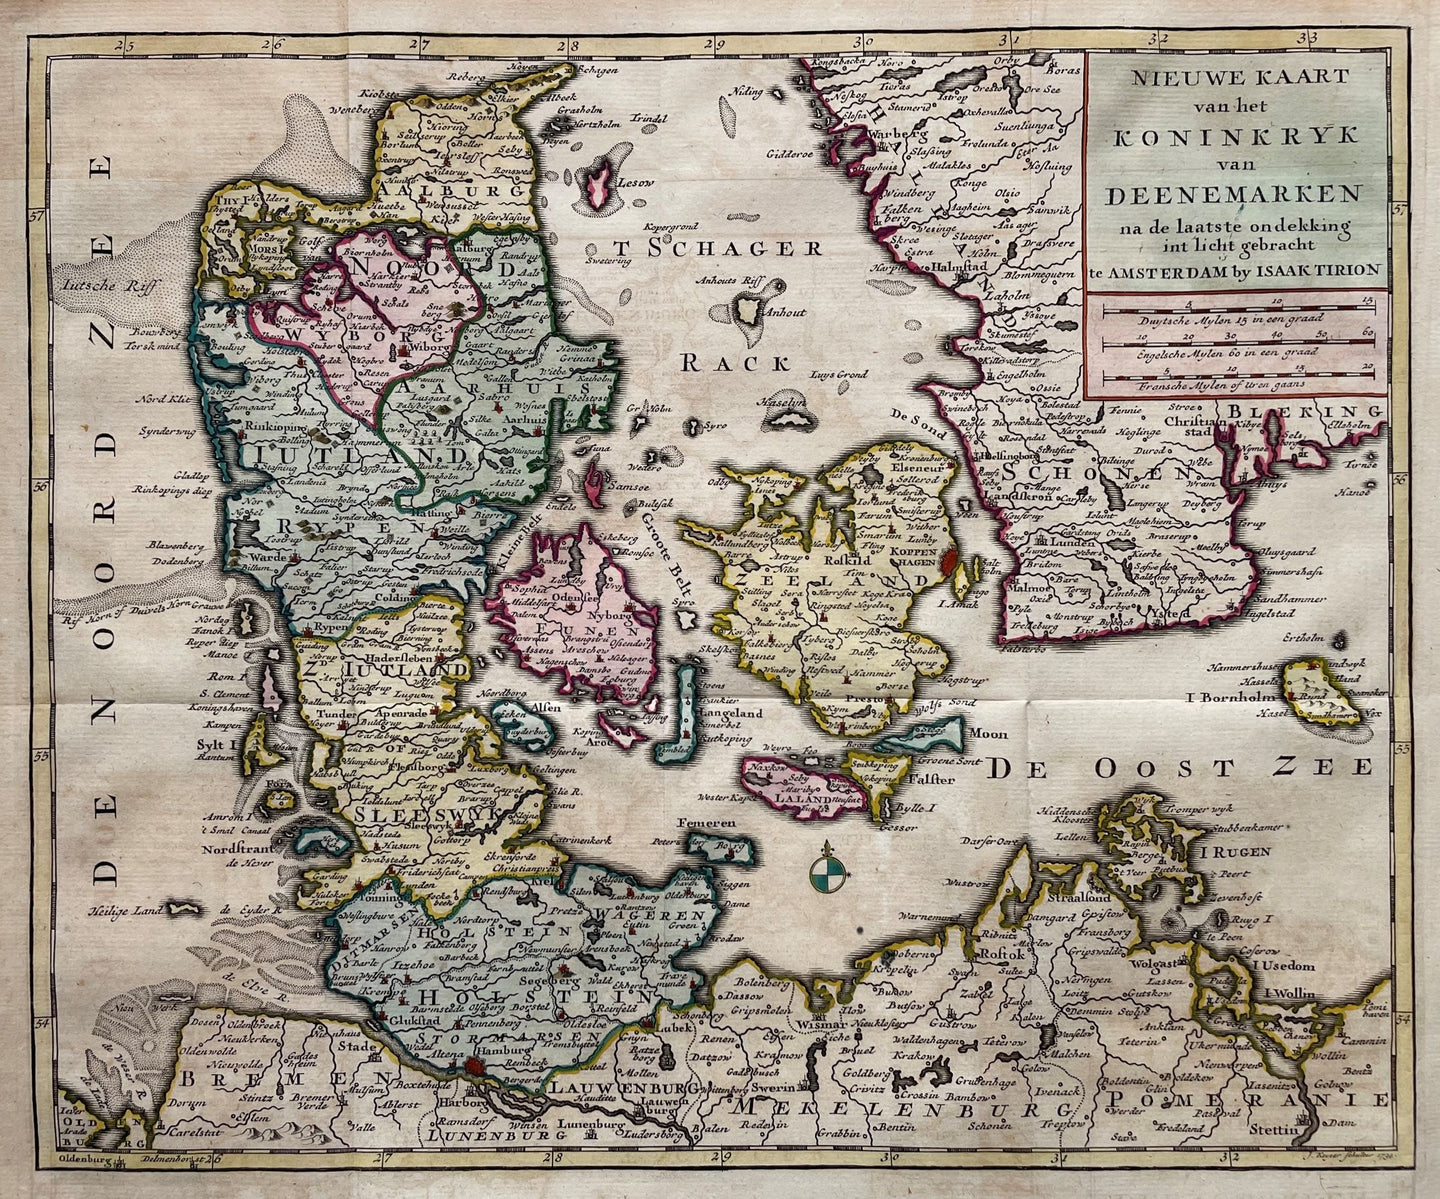 Denemarken Denmark - I Tirion / J Keizer - 1735